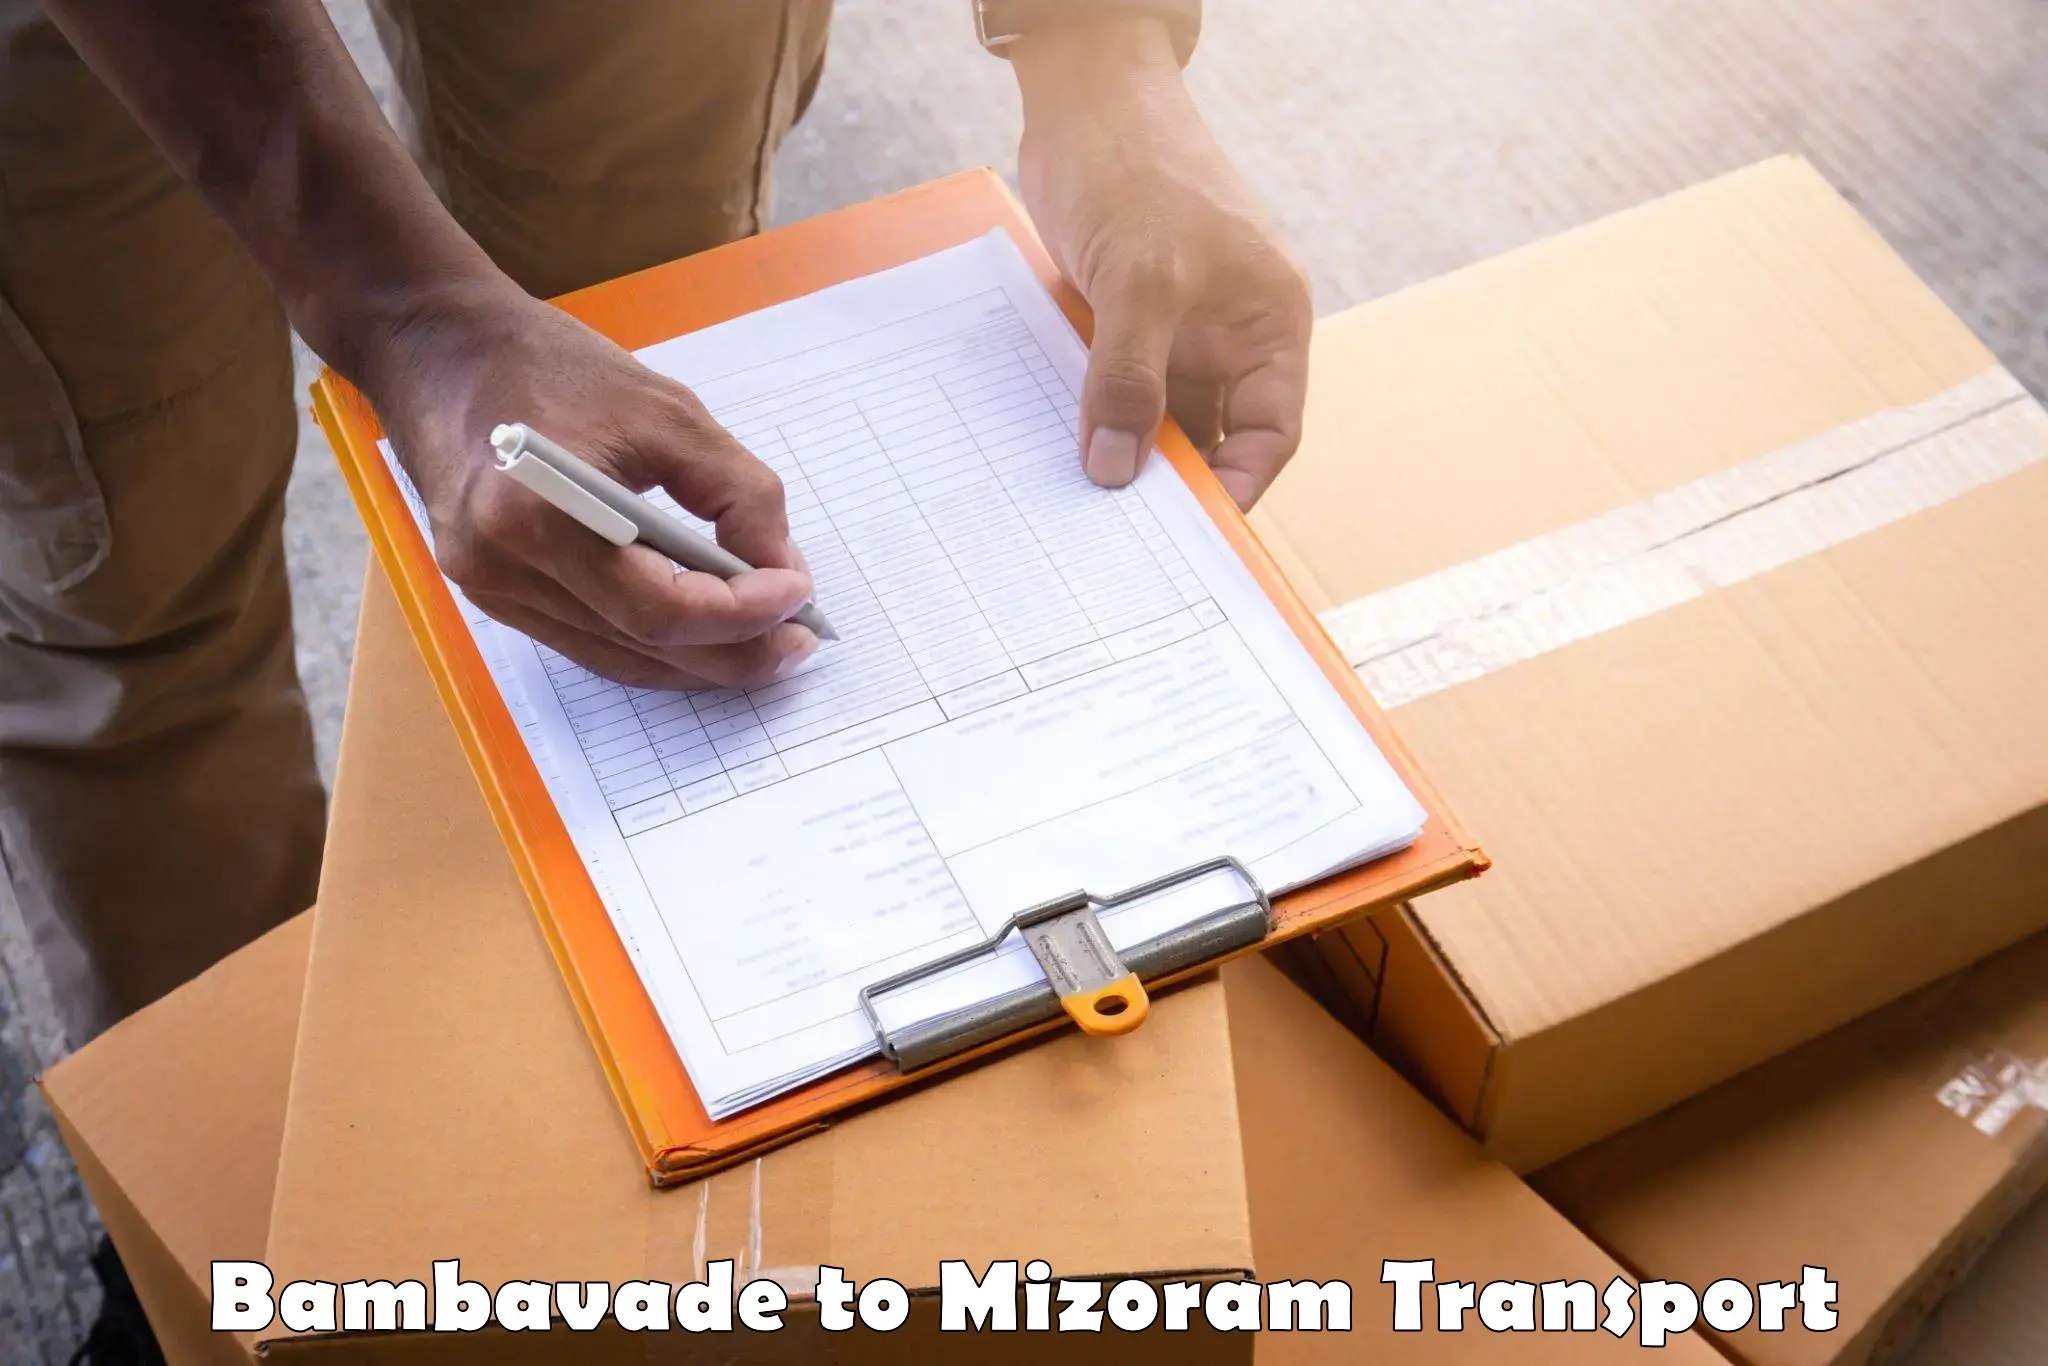 Online transport booking Bambavade to Mizoram